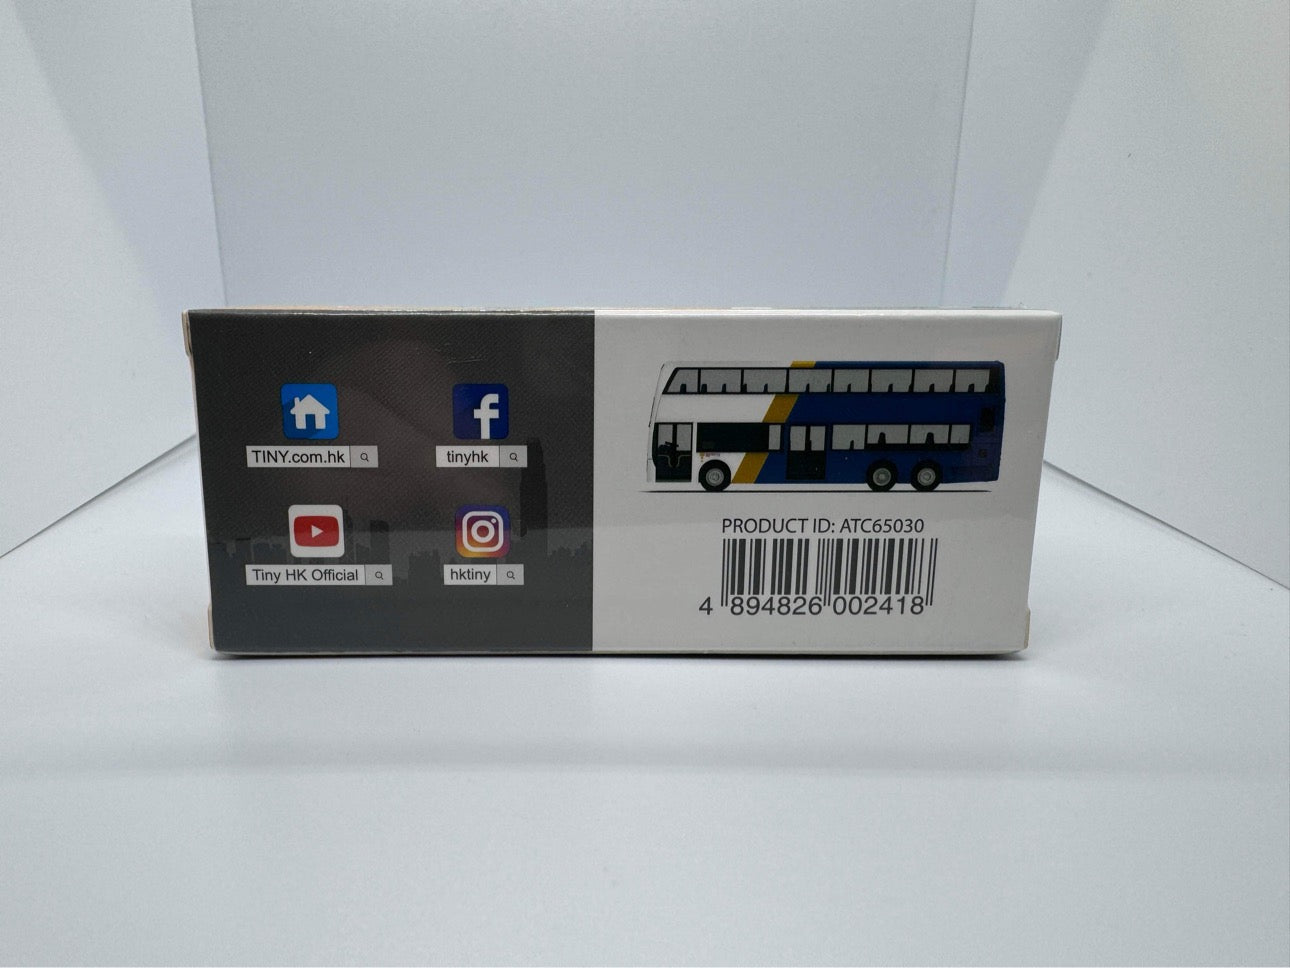 Tiny Toys - KMB ADL Enviro500 E500 MMC Bus Blue/White - 1:110 - #L22